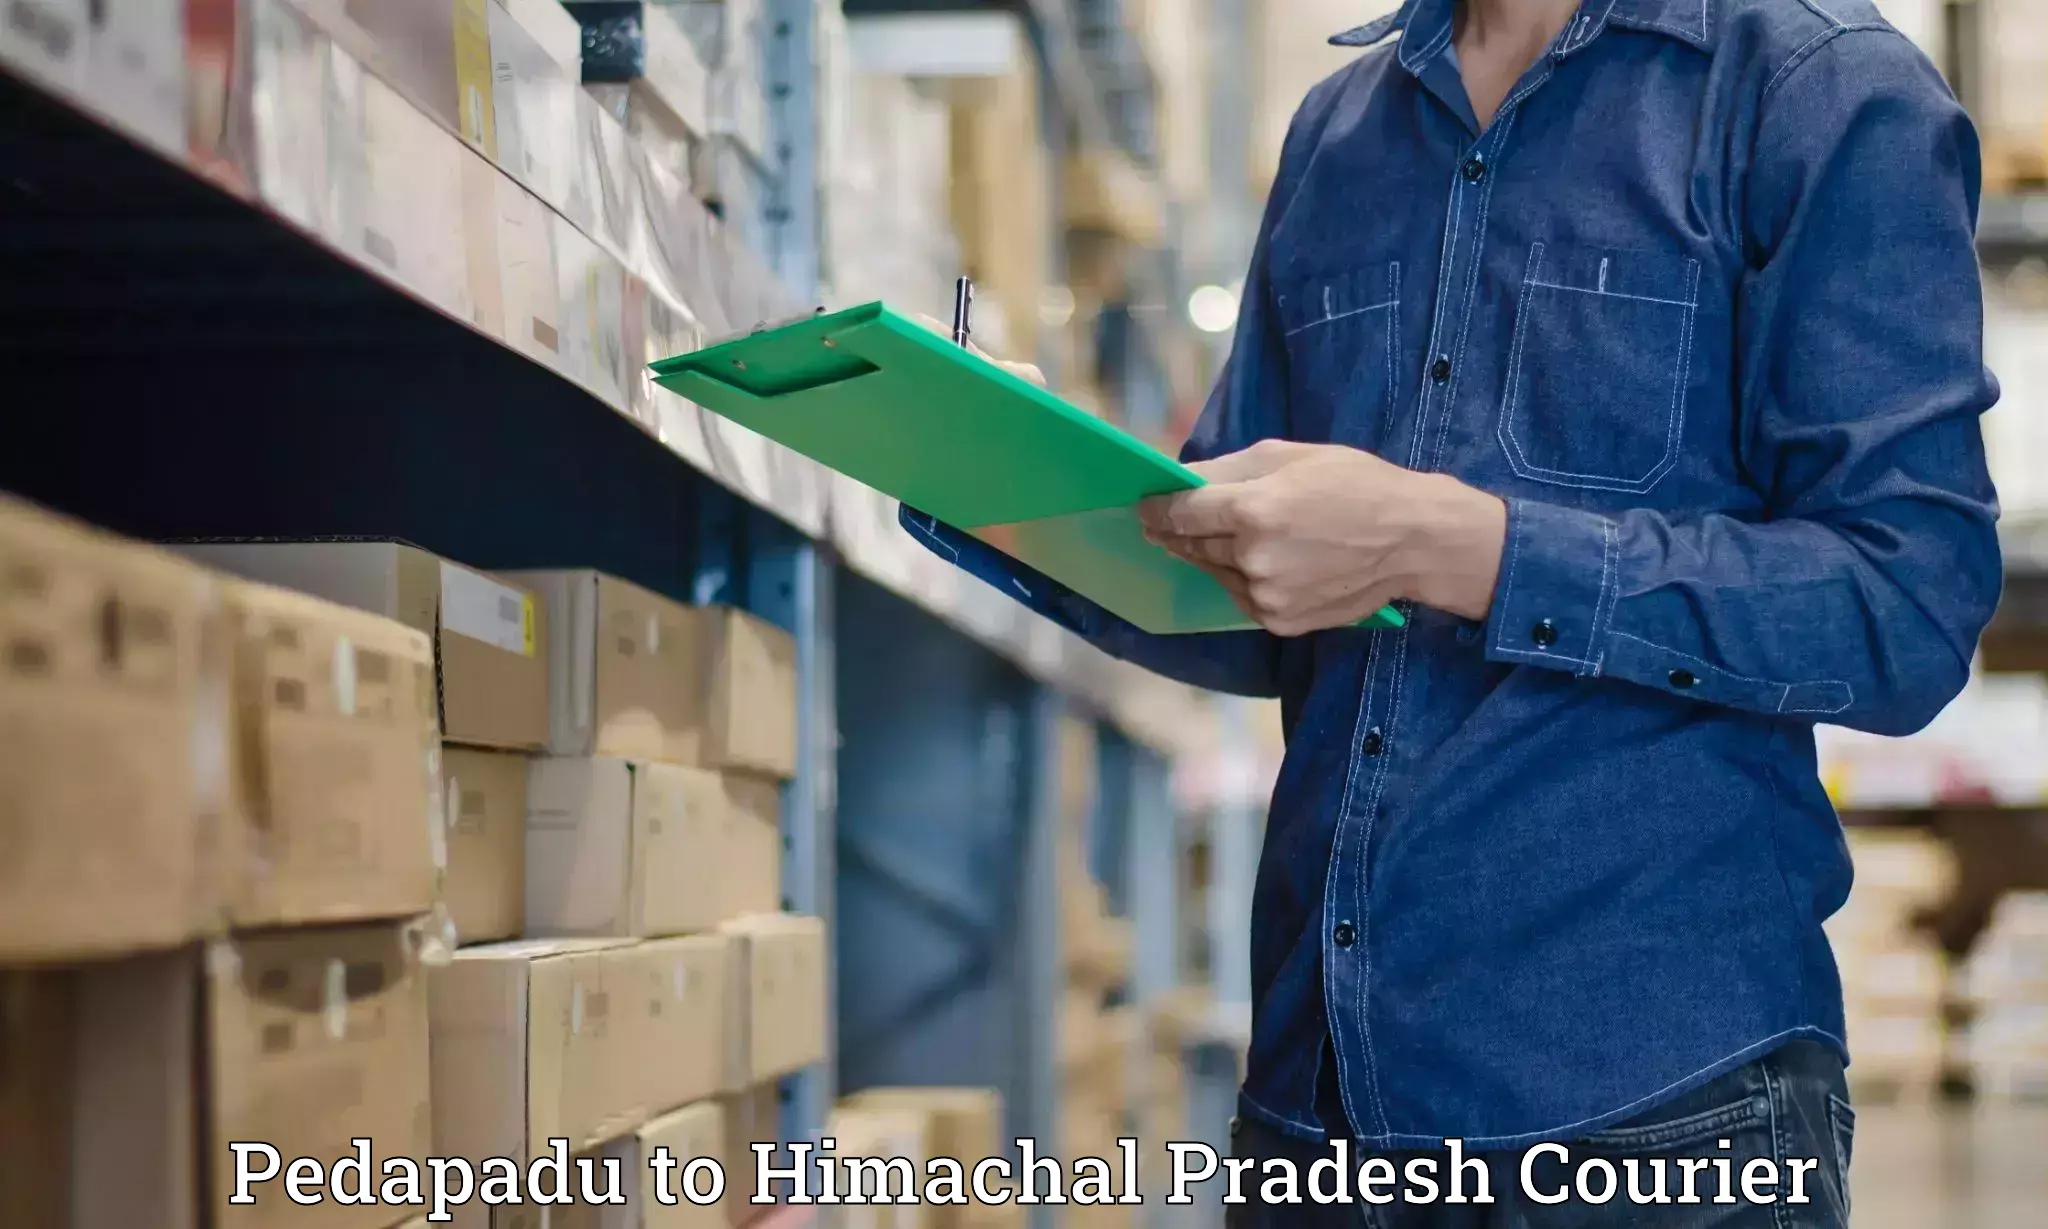 Professional courier services Pedapadu to Himachal Pradesh